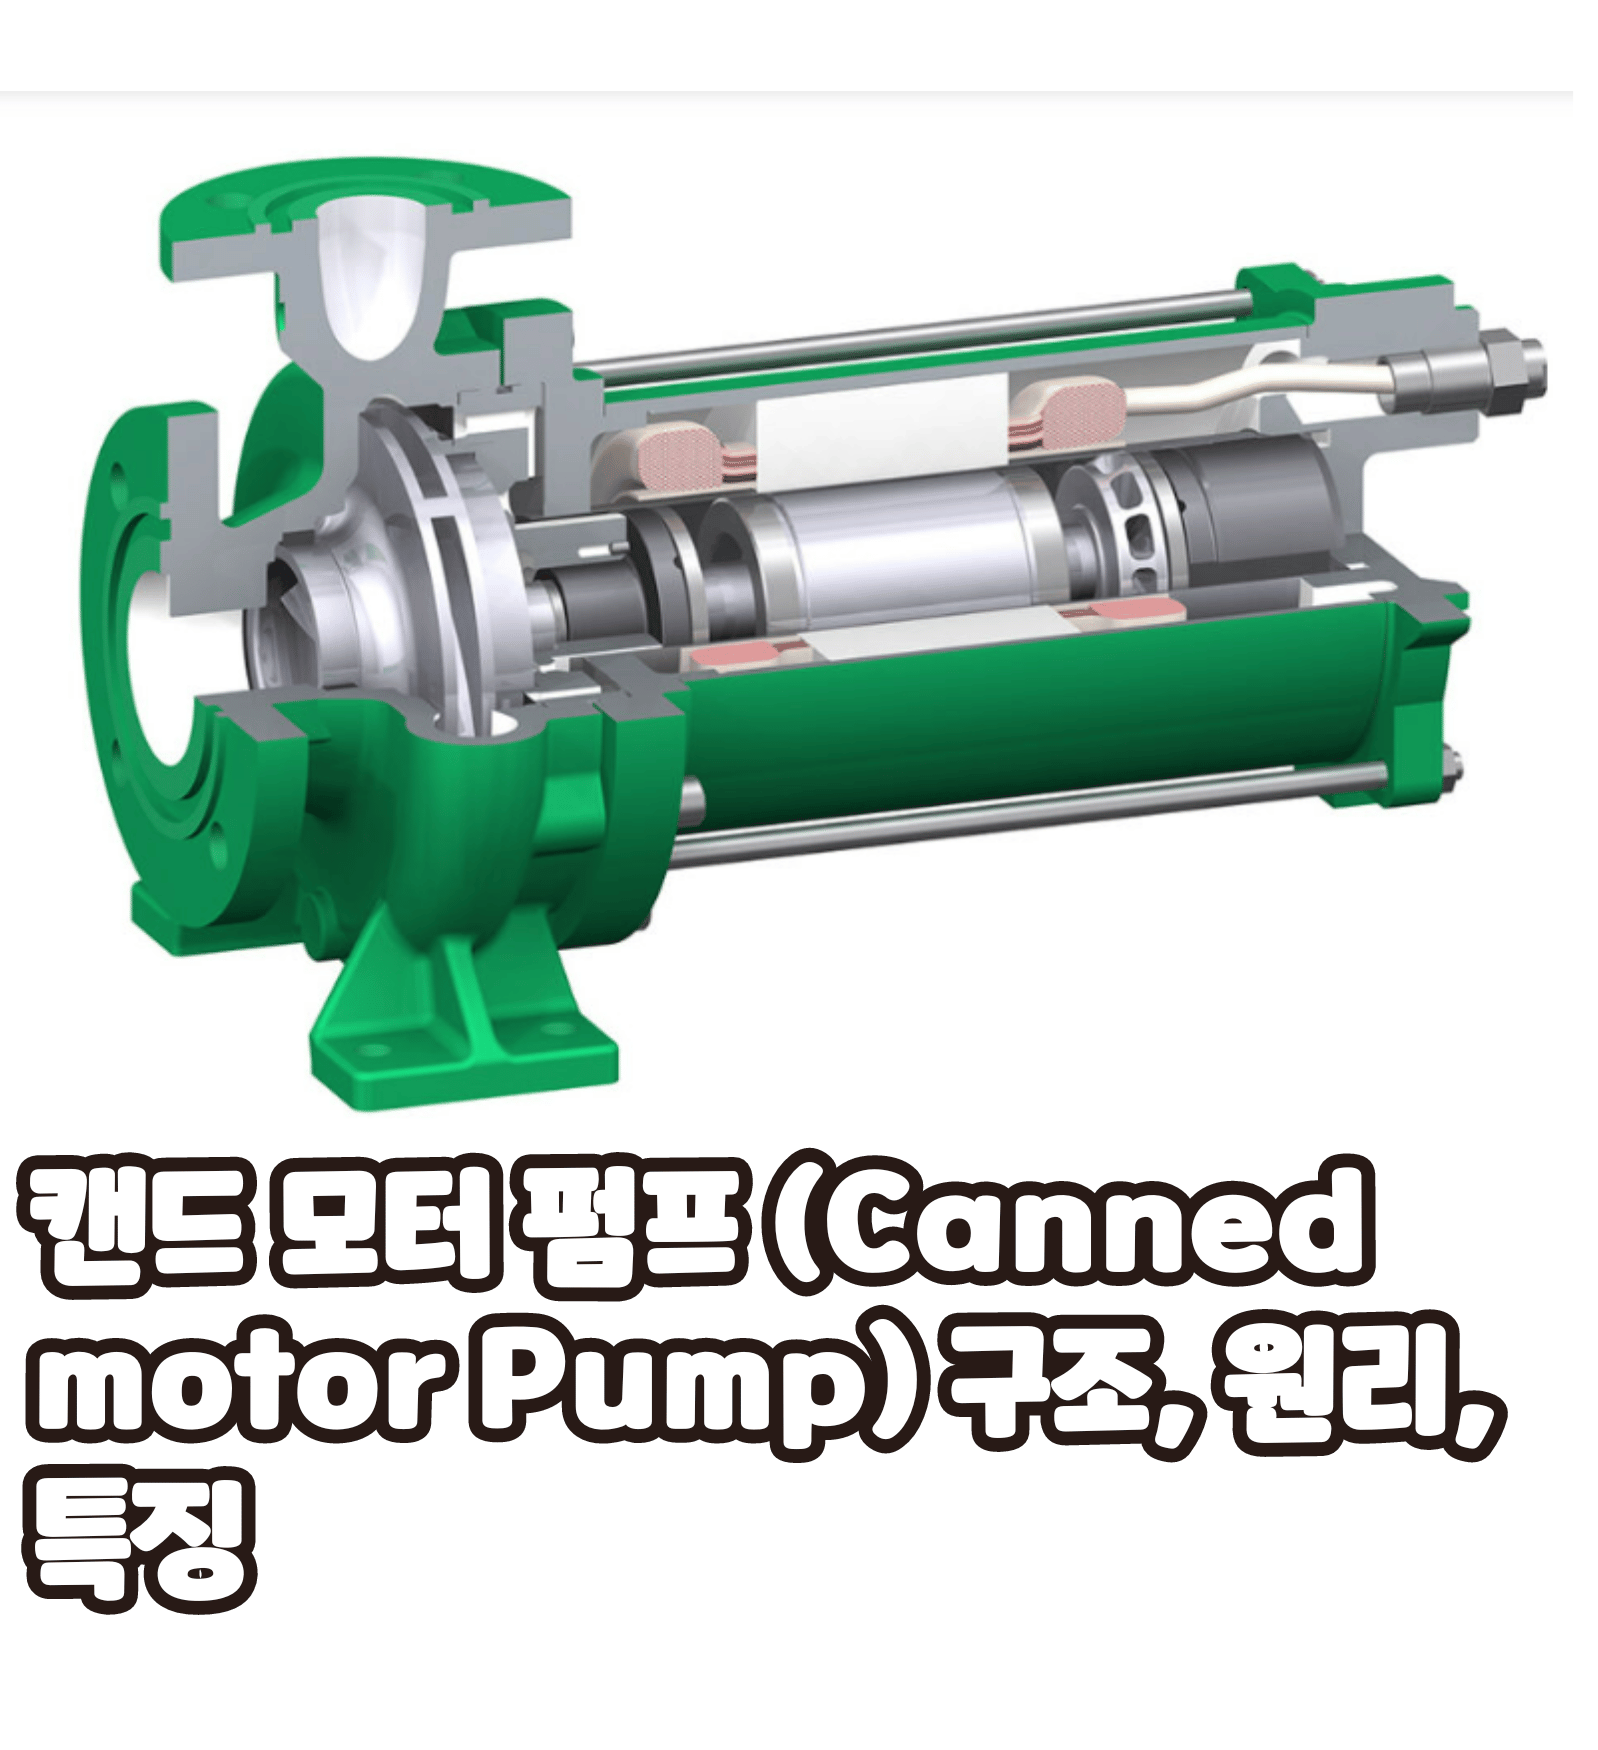 캔드 모터 펌프 (Canned motor Pump) 구조, 원리, 특징